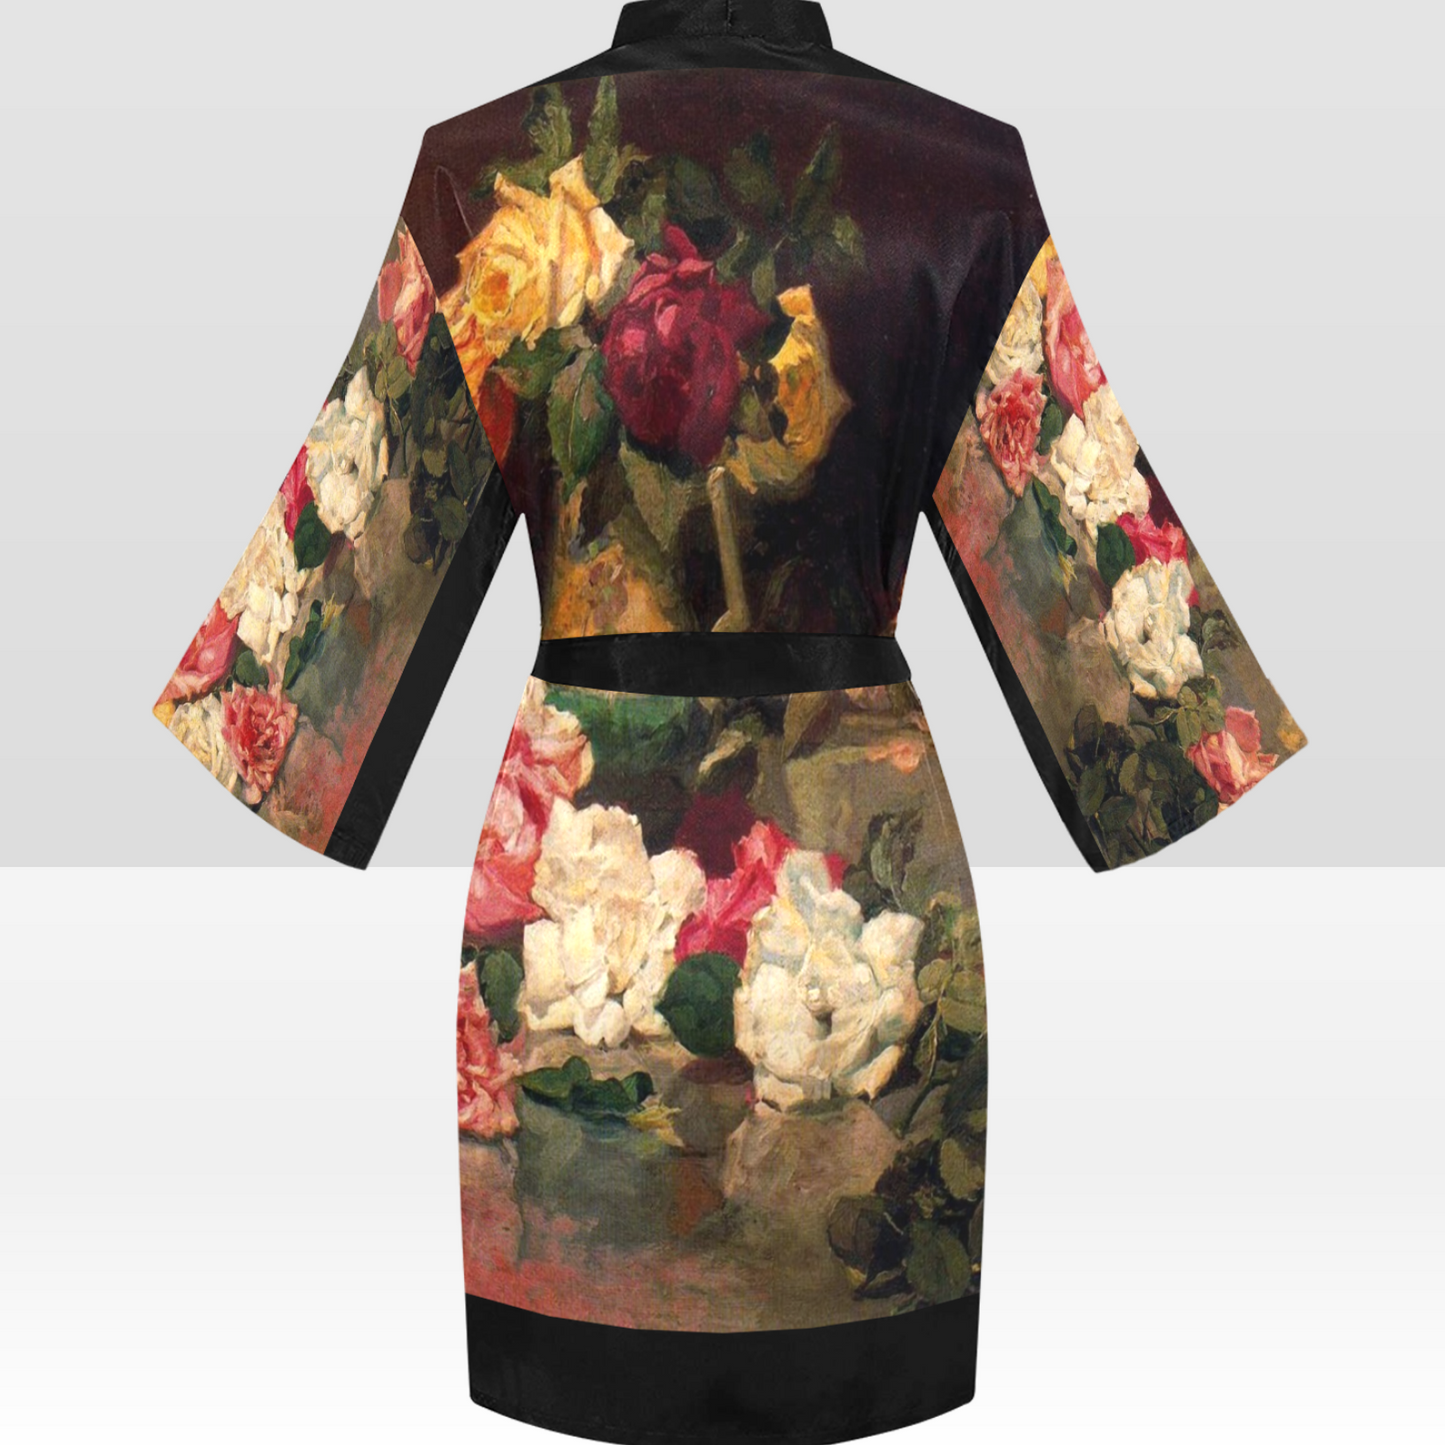 Vintage Floral Kimono Robe, Black or White Trim, Sizes XS to 2XL, Design 37